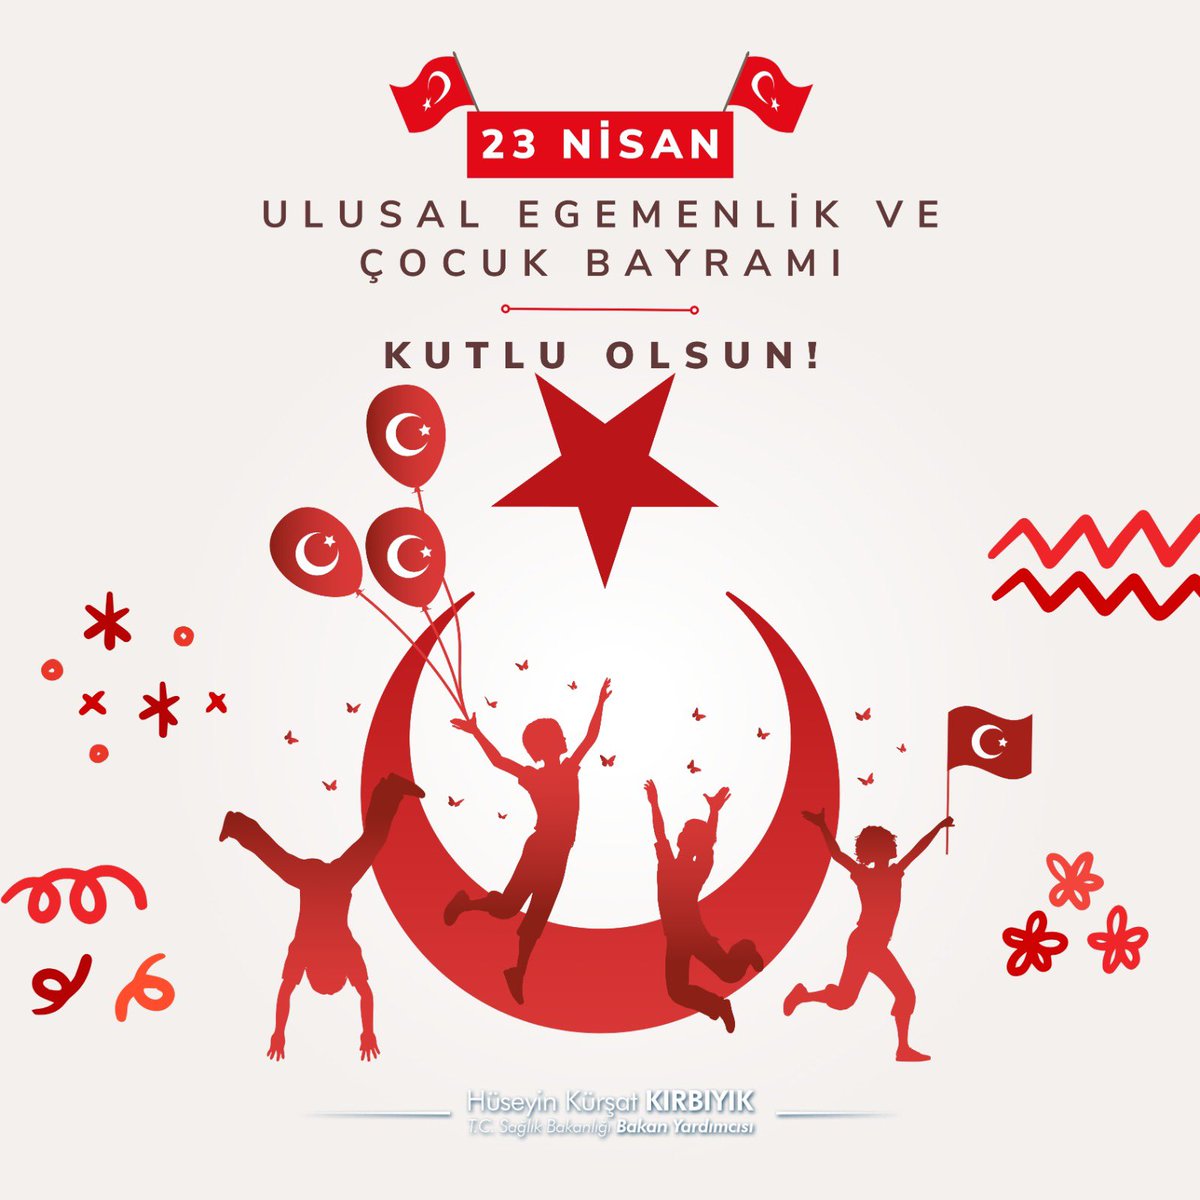 Türkiye Cumhuriyetinin temelinin atıldığı TBMM’nin açılışının 104 üncü yıldönümü ile Ulusal Egemenlik ve Çocuk Bayramımız kutlu olsun.